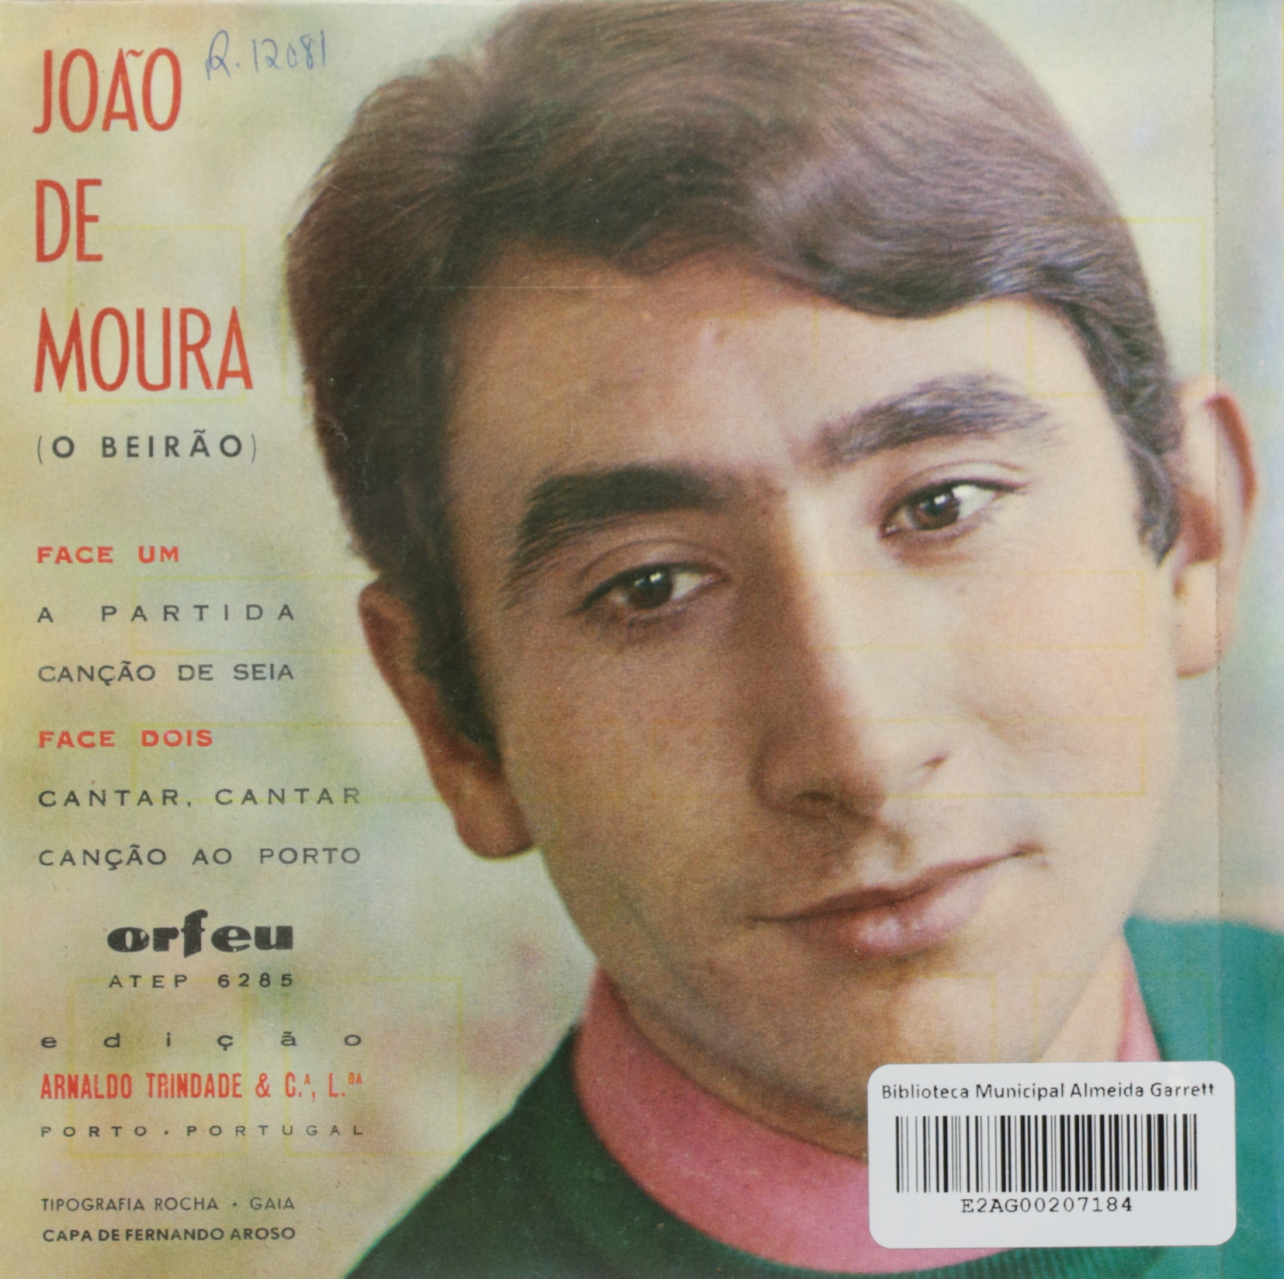 João de Moura